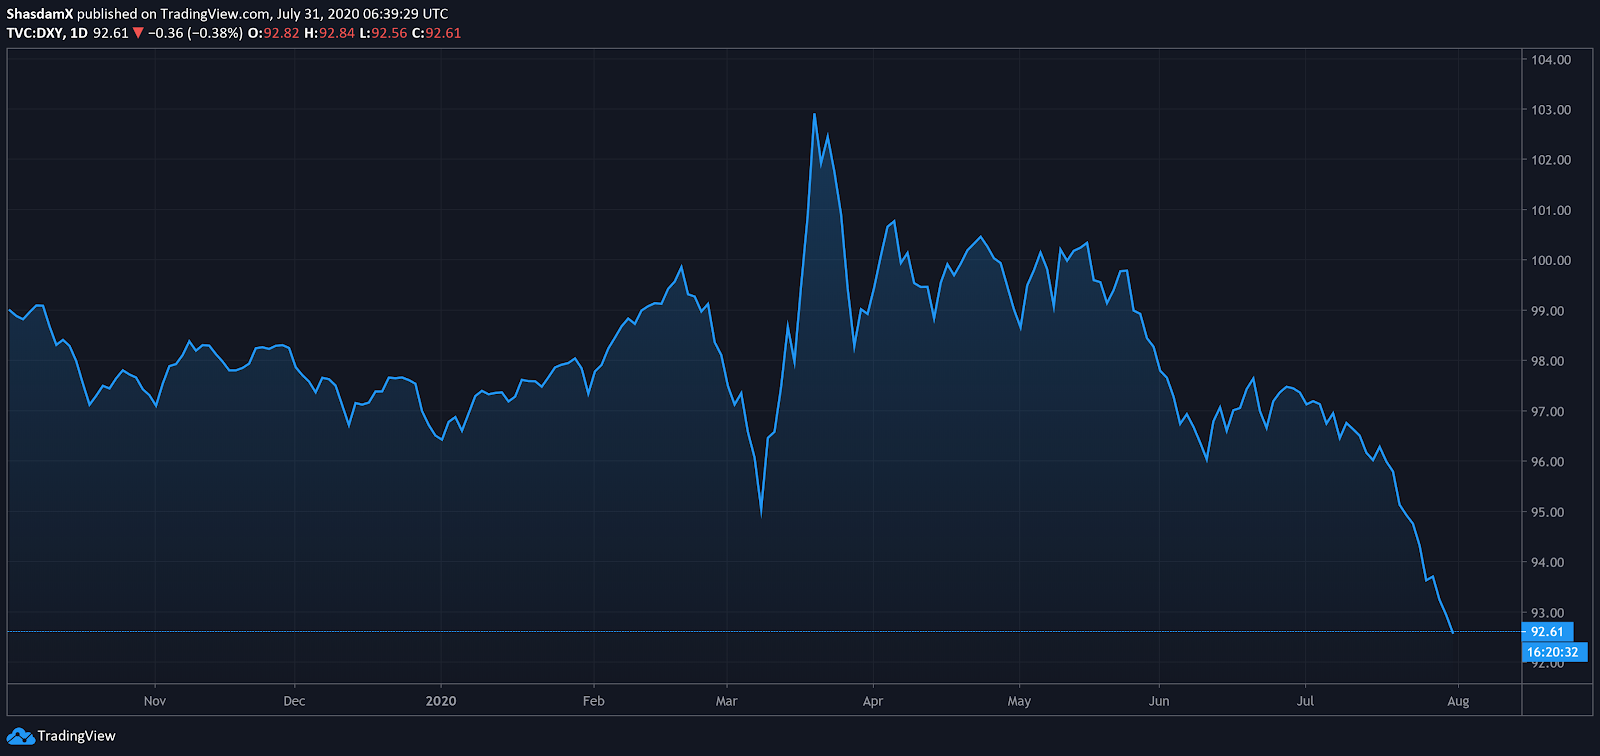 Tages-Chart des US-Dollar-Währungsindex (DXY). Quelle: TradingView